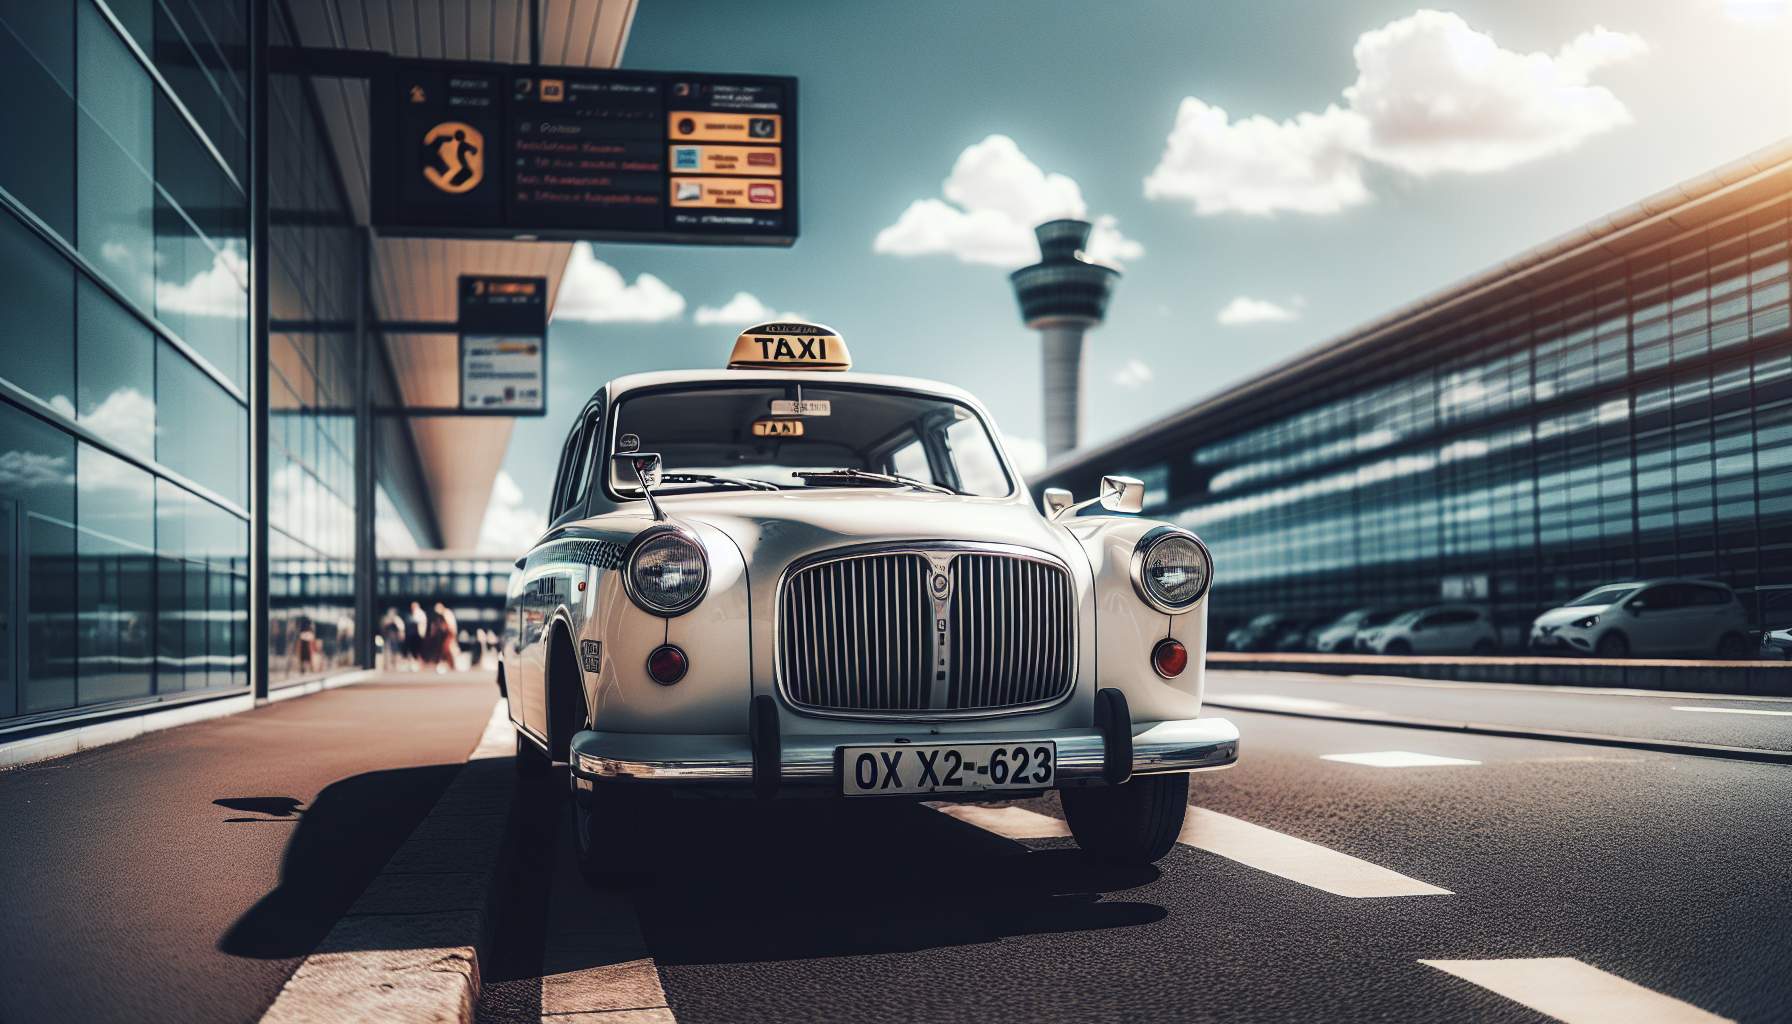 Tarifs taxi : de Paris à l'aéroport d'Orly, ce qu'il faut savoir